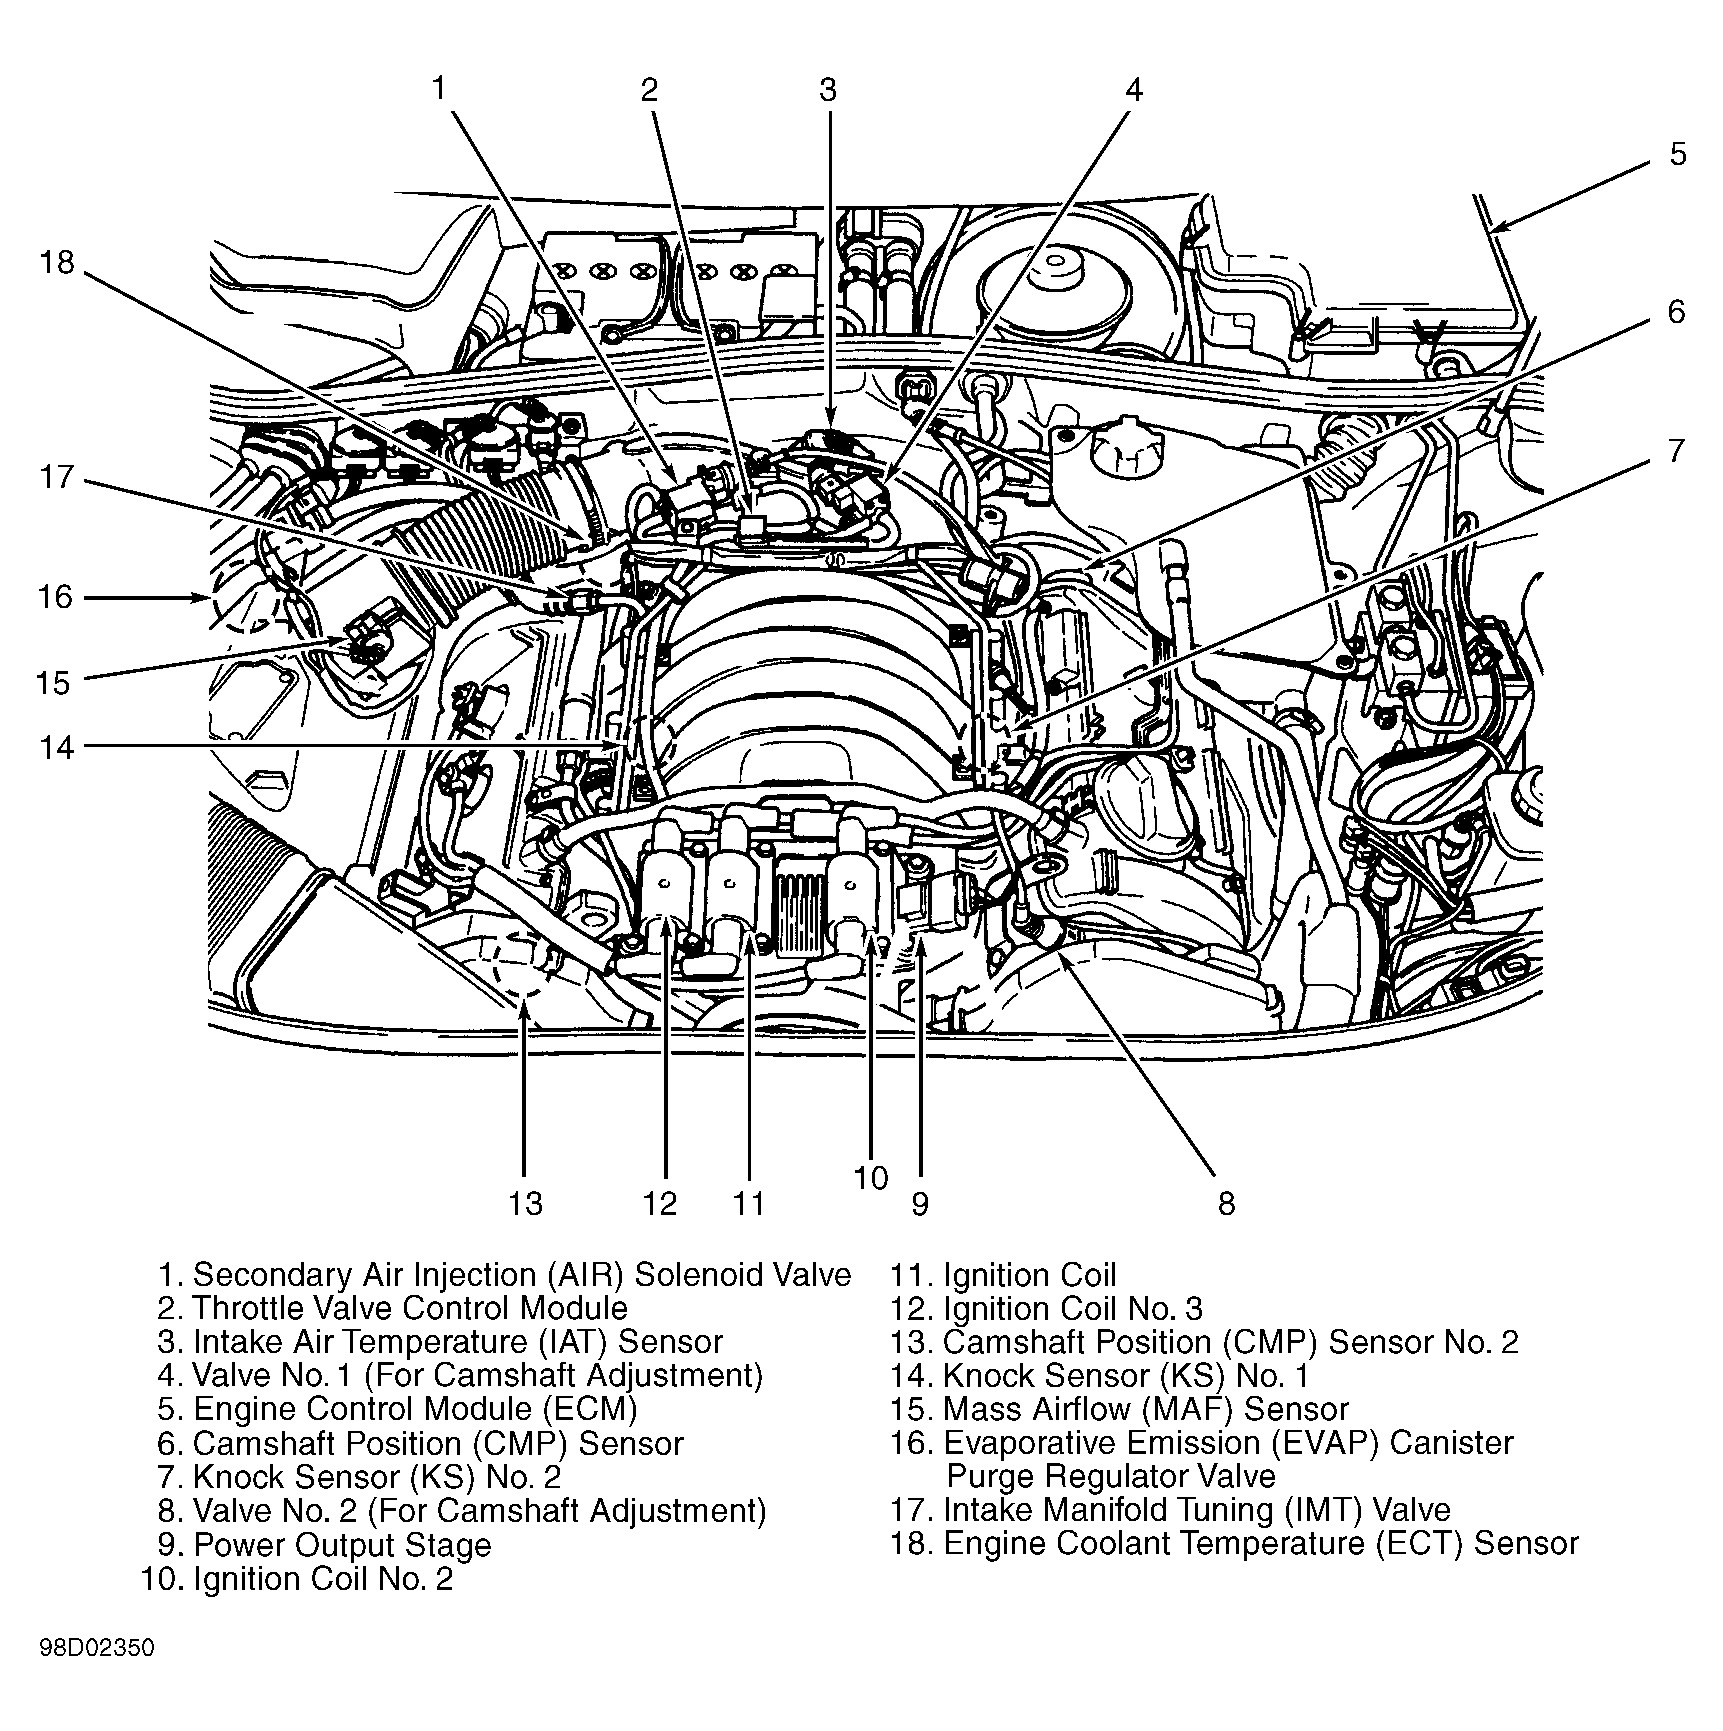 2002 Vw Passat 1 8 T Engine Diagram 2000 Audi A6 Engine Diagram Audi Wiring Diagrams Instructions Of 2002 Vw Passat 1 8 T Engine Diagram